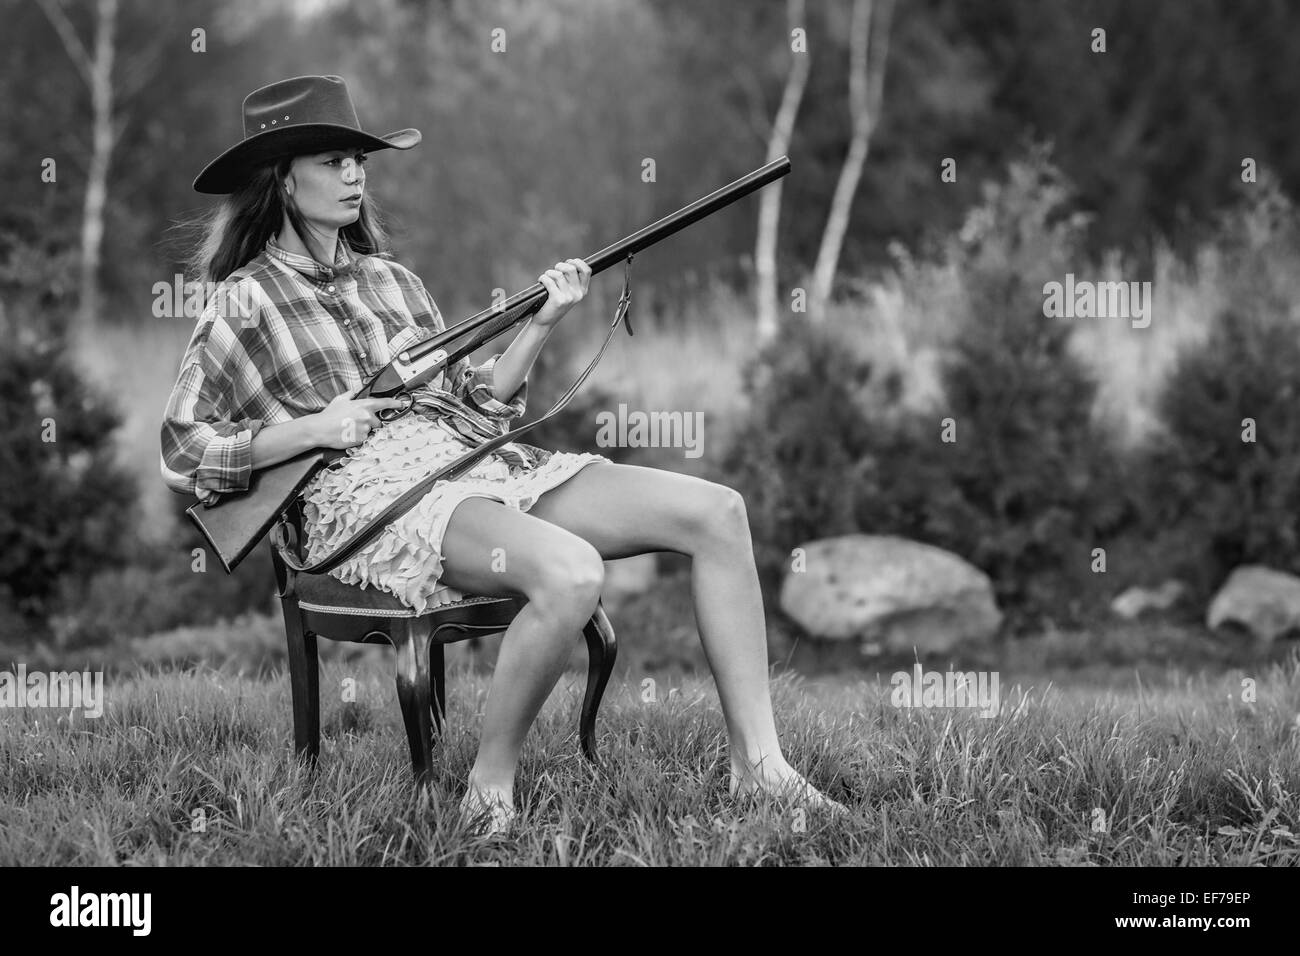 Schwarz / weiß Fotografie eines Mädchens in Cowboy-Hut mit einer Schrotflinte in einem Hinterhof in einem ausgefallenen Sessel sitzend. Stockfoto